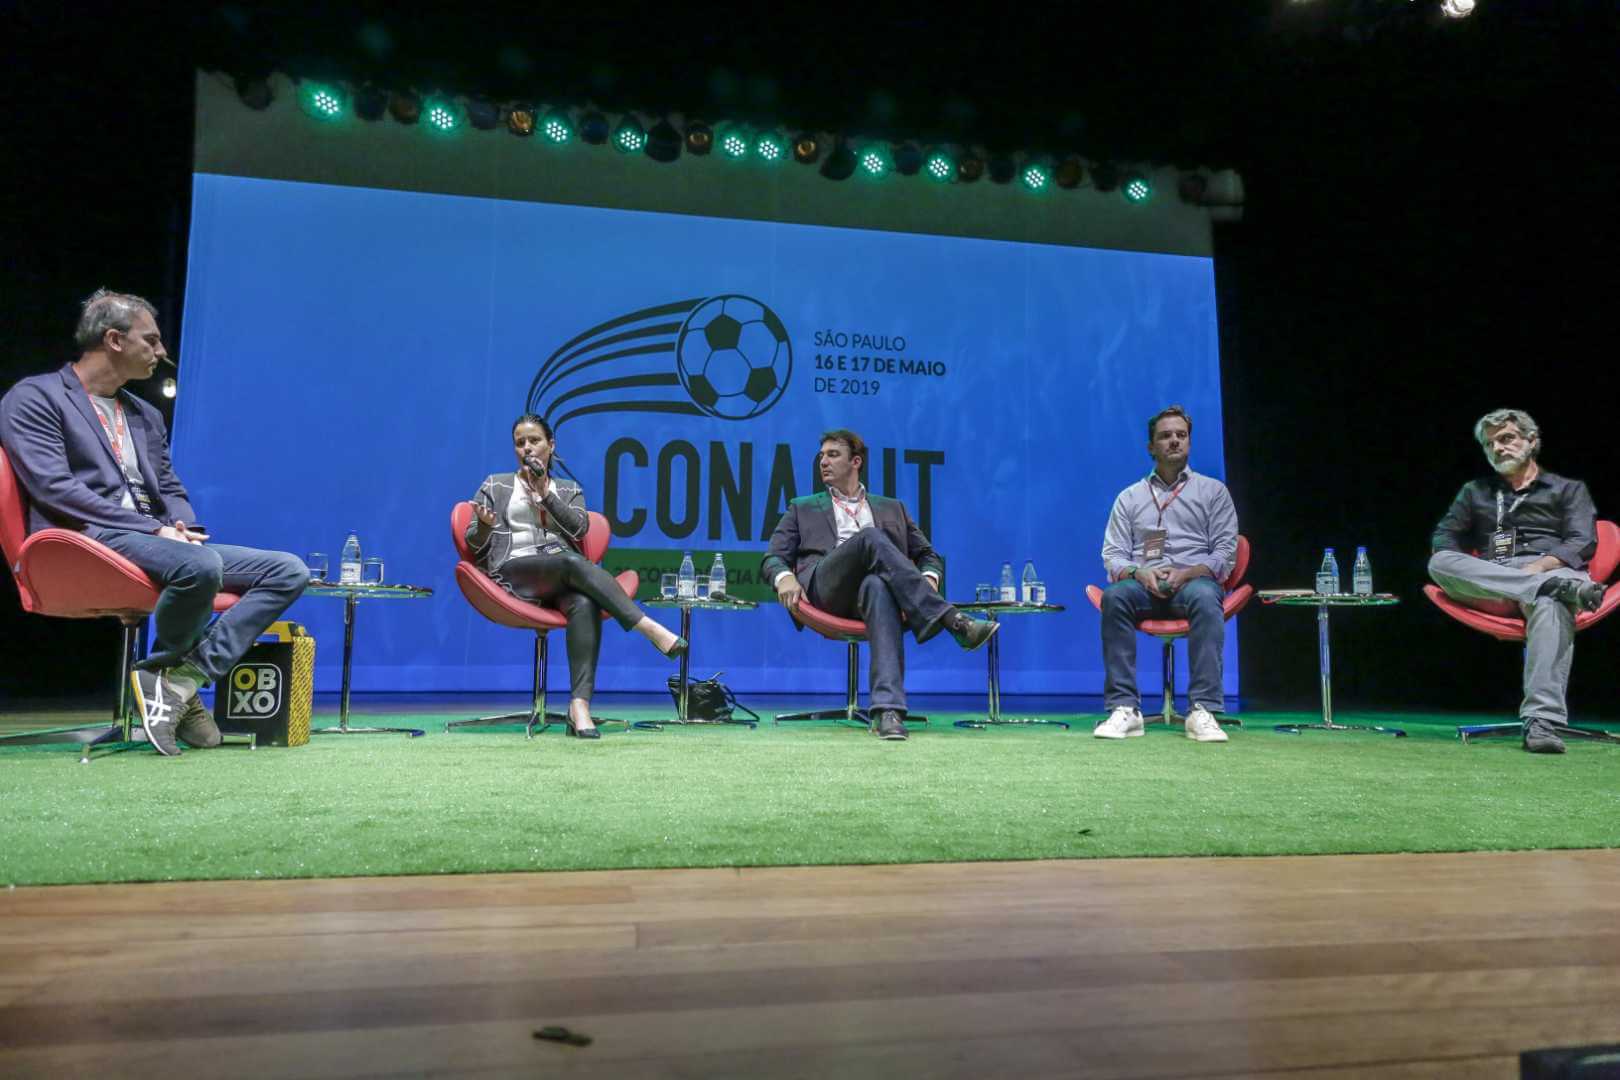 CONAFUT - Conferência Nacional de Futebol - junho 2024 - São Paulo